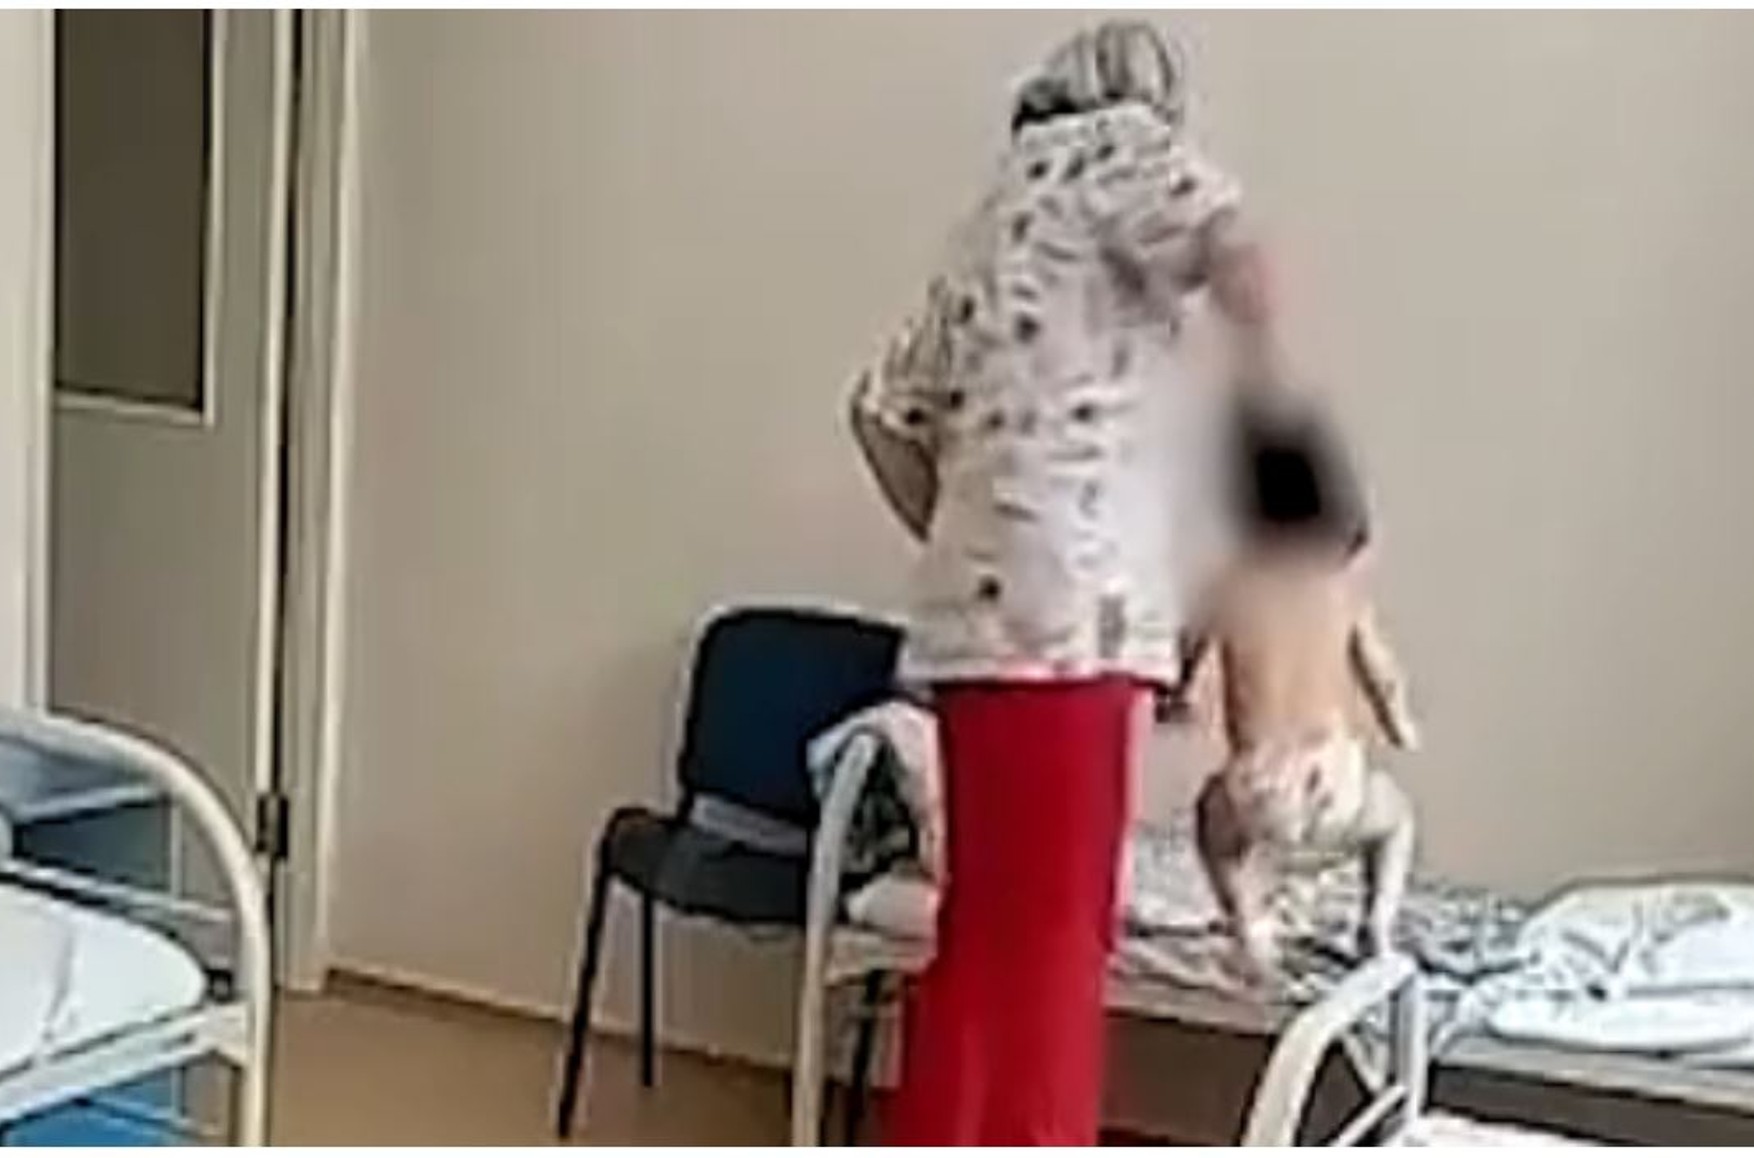 На медсестру з Новосибірська, яка схопила дитину за волосся і кинула на ліжко, завели кримінальну справу